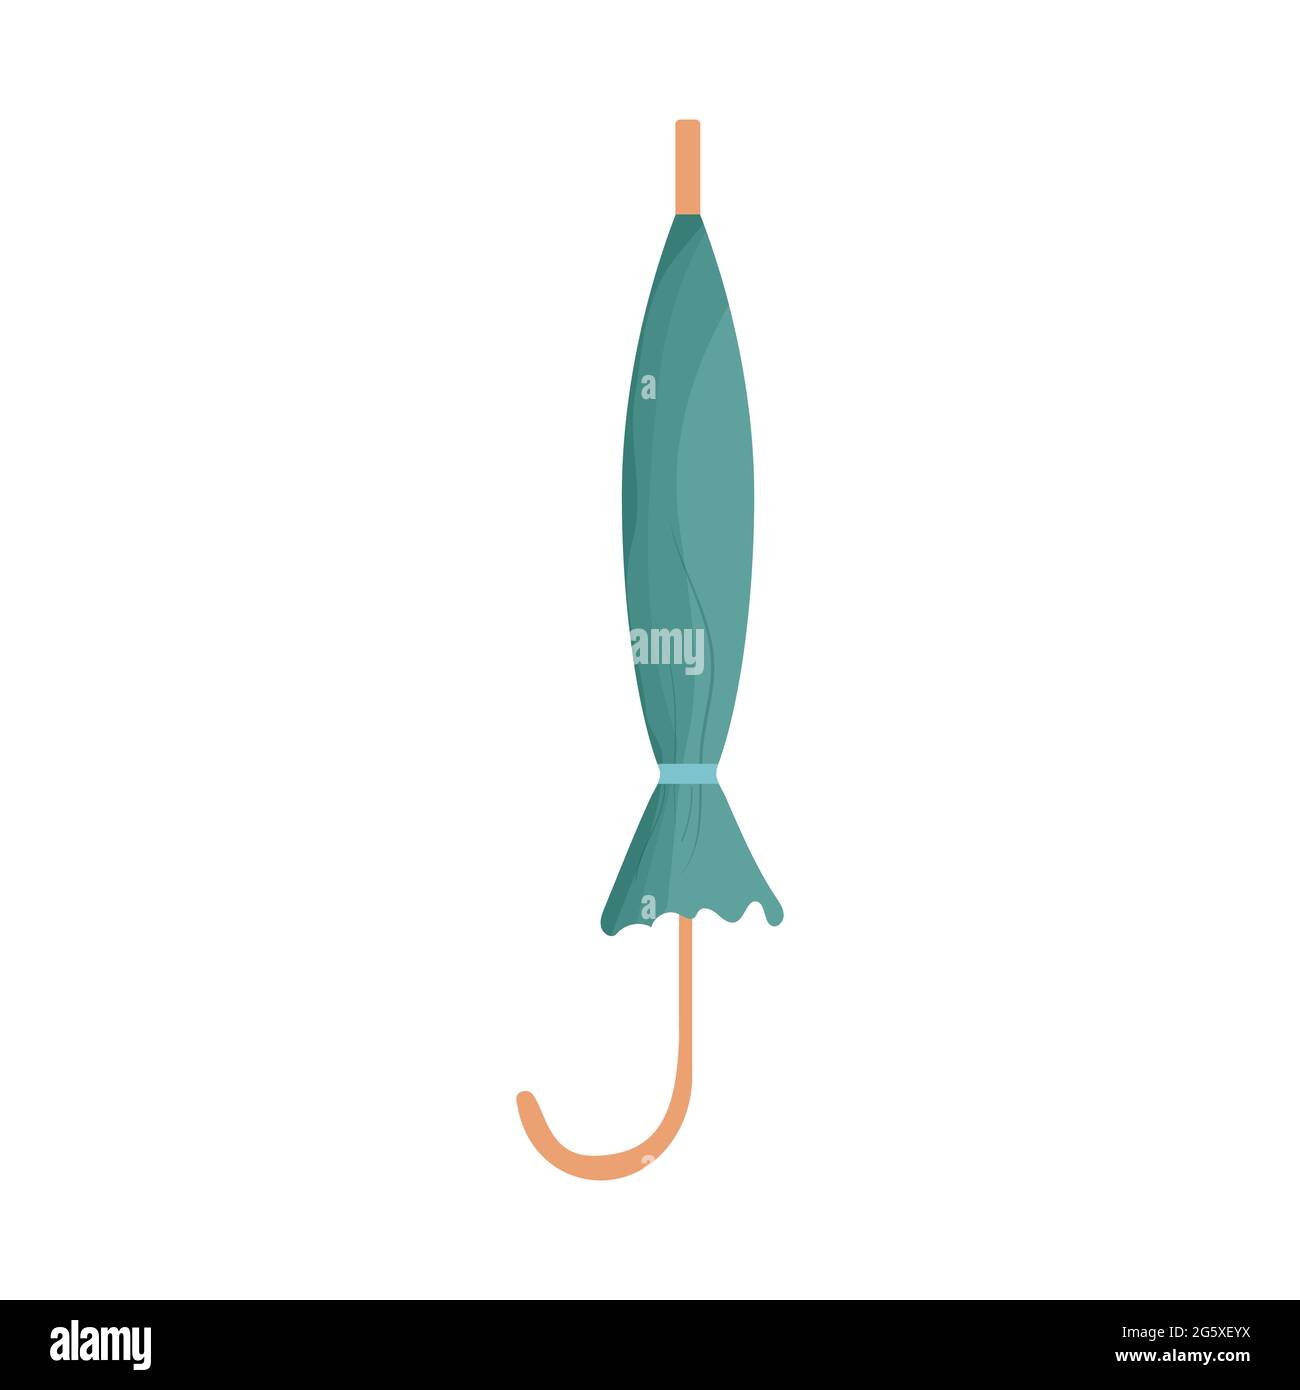 Geschlossener Regenschirm isoliert auf weißem Hintergrund in Cartoon, flachen Stil Stock Vektor-Illustration. Regenschutz, Zubehörkonzept. Vektorgrafik Stock Vektor